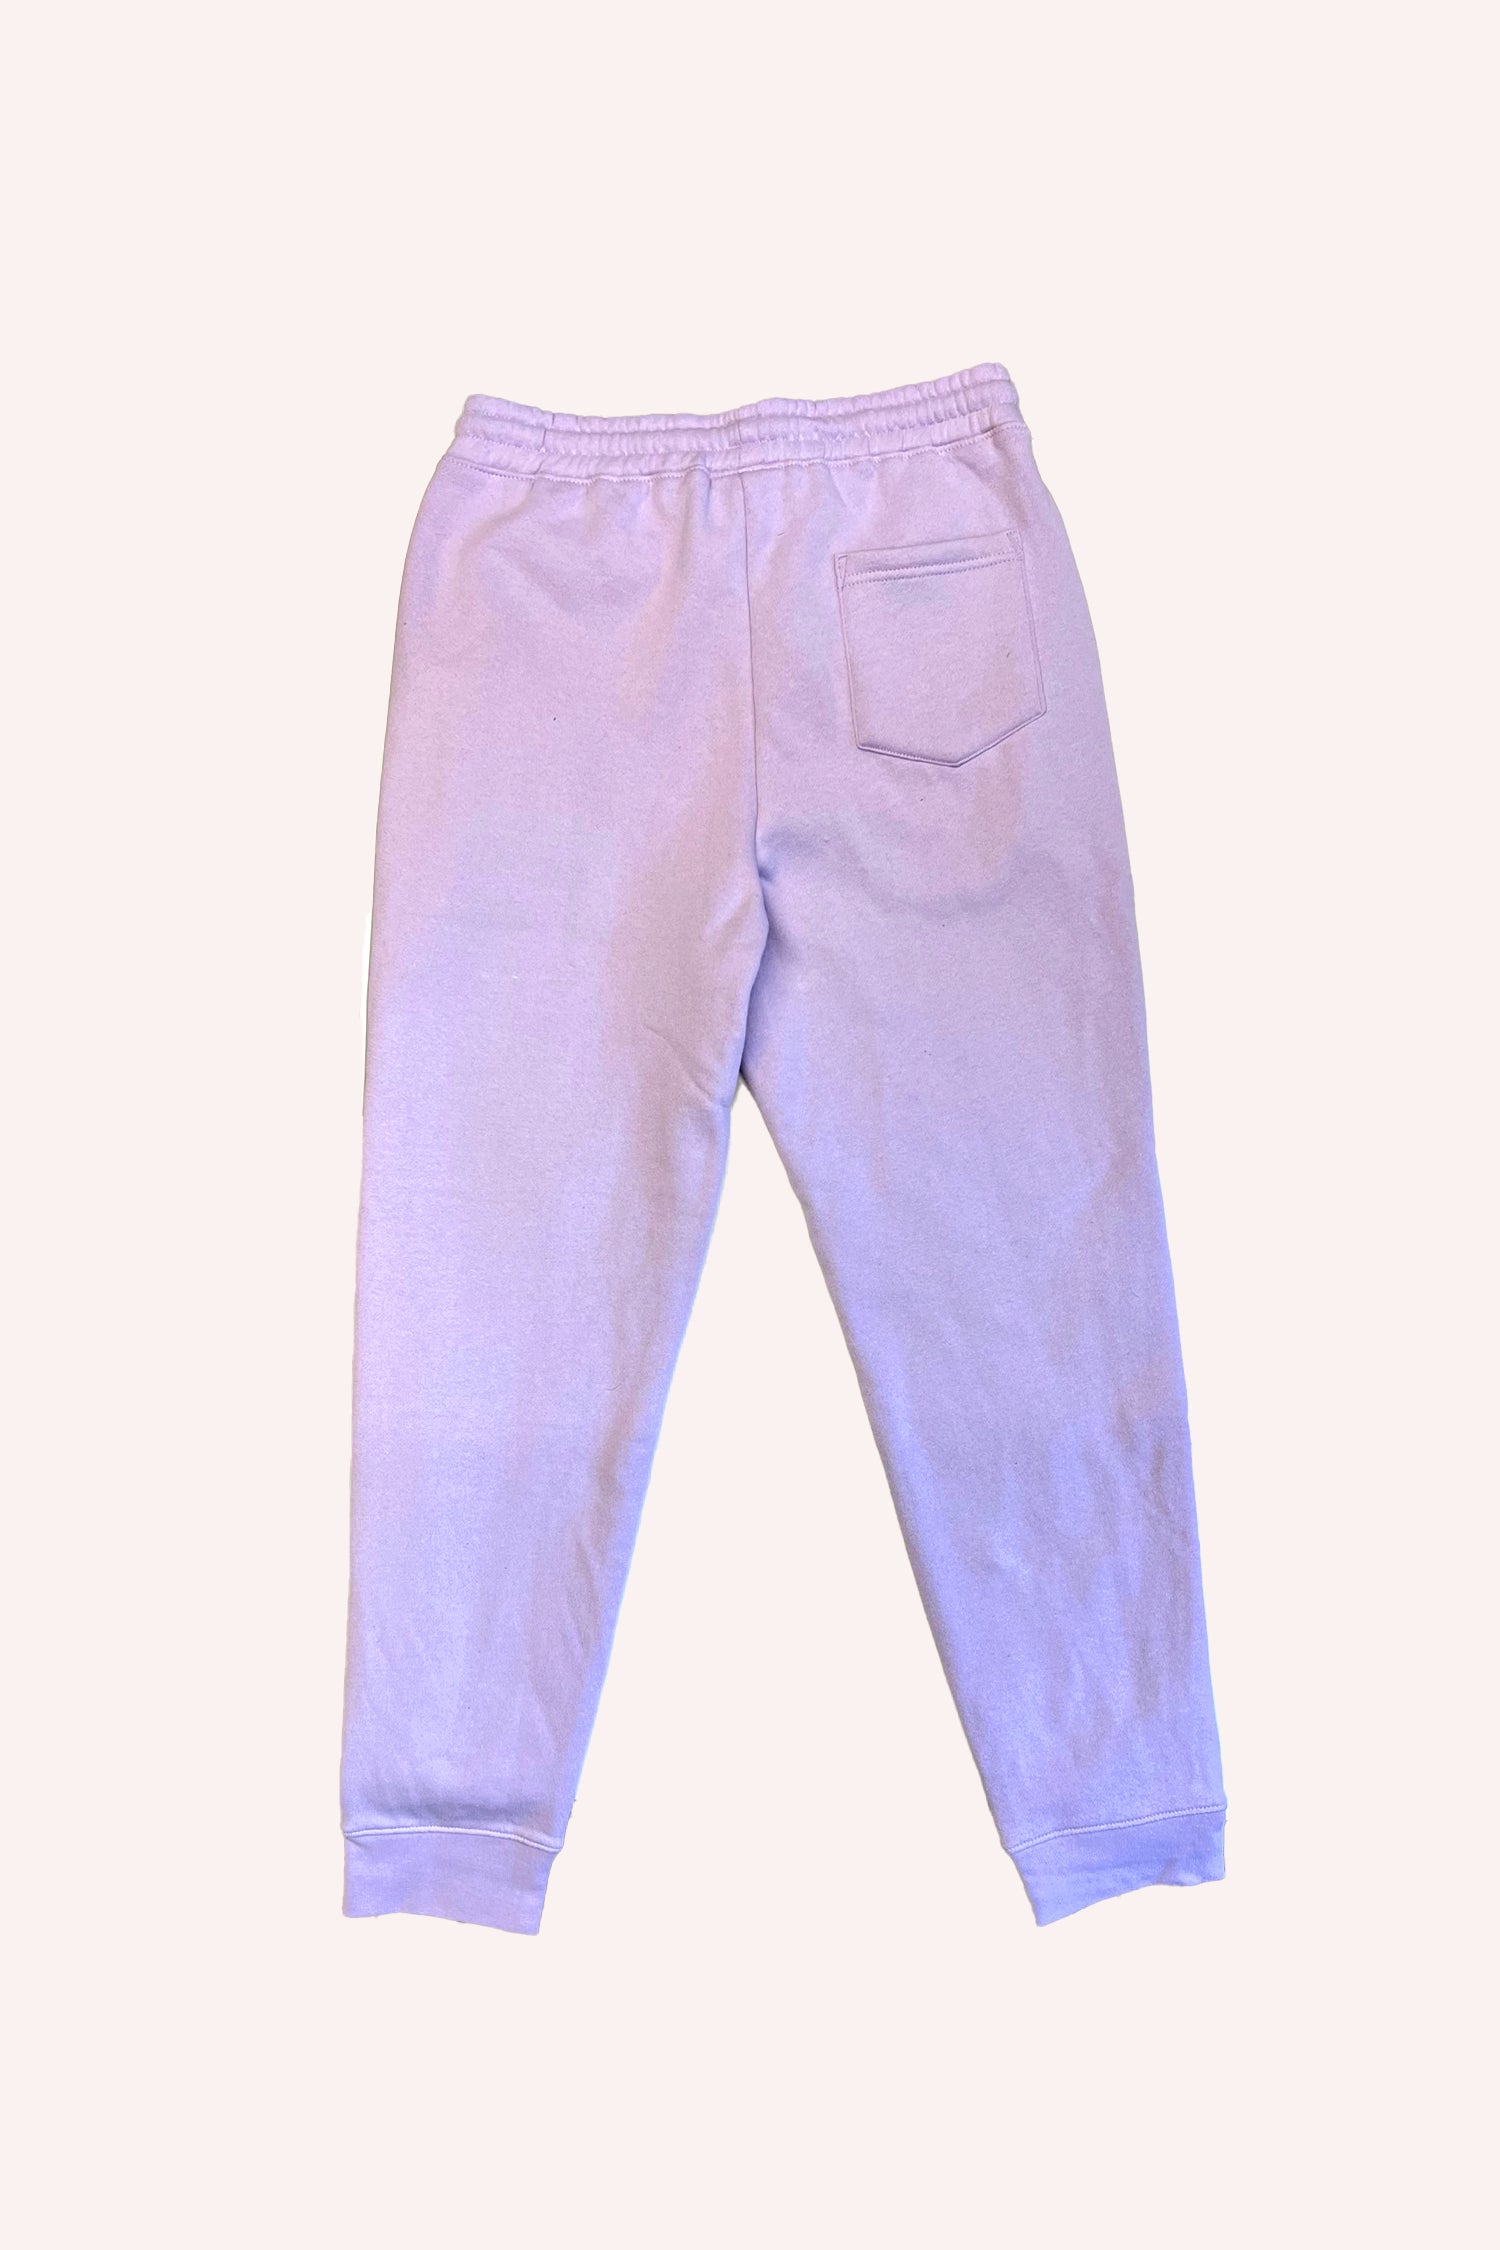 Pantalon de survêtement Mushroom Lavender, 2 poches, un lacet lavande en guise de ceinture, une poche arrière à droite 